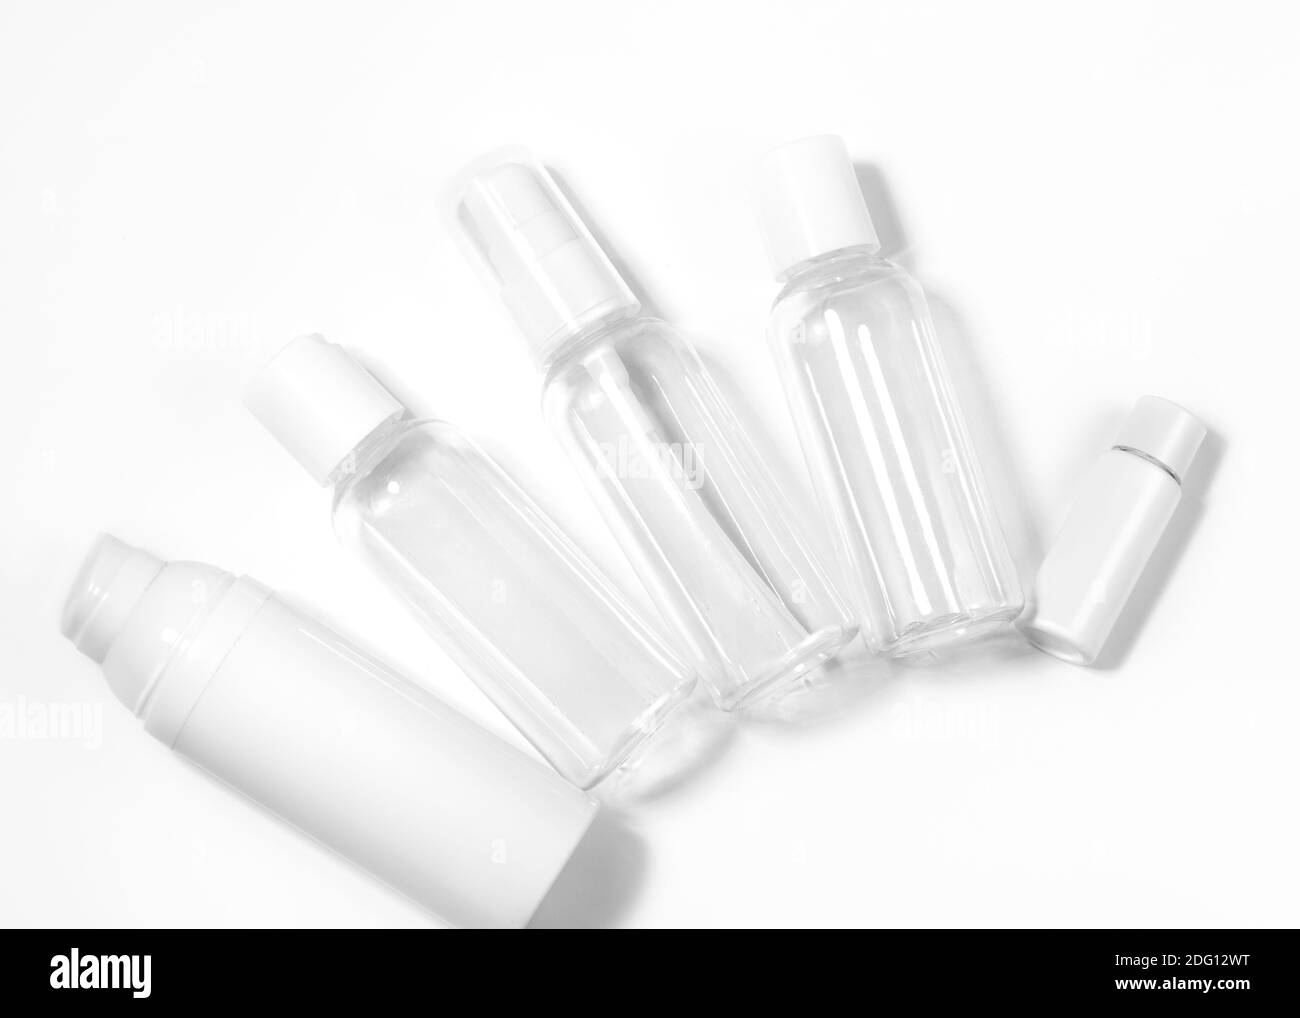 Weiße Kosmetikflaschen auf weißem Hintergrund. Wellness, Spa und Körperpflege Flaschen Sammlung. Schönheitsbehandlung, Badezimmer-Set Stockfoto